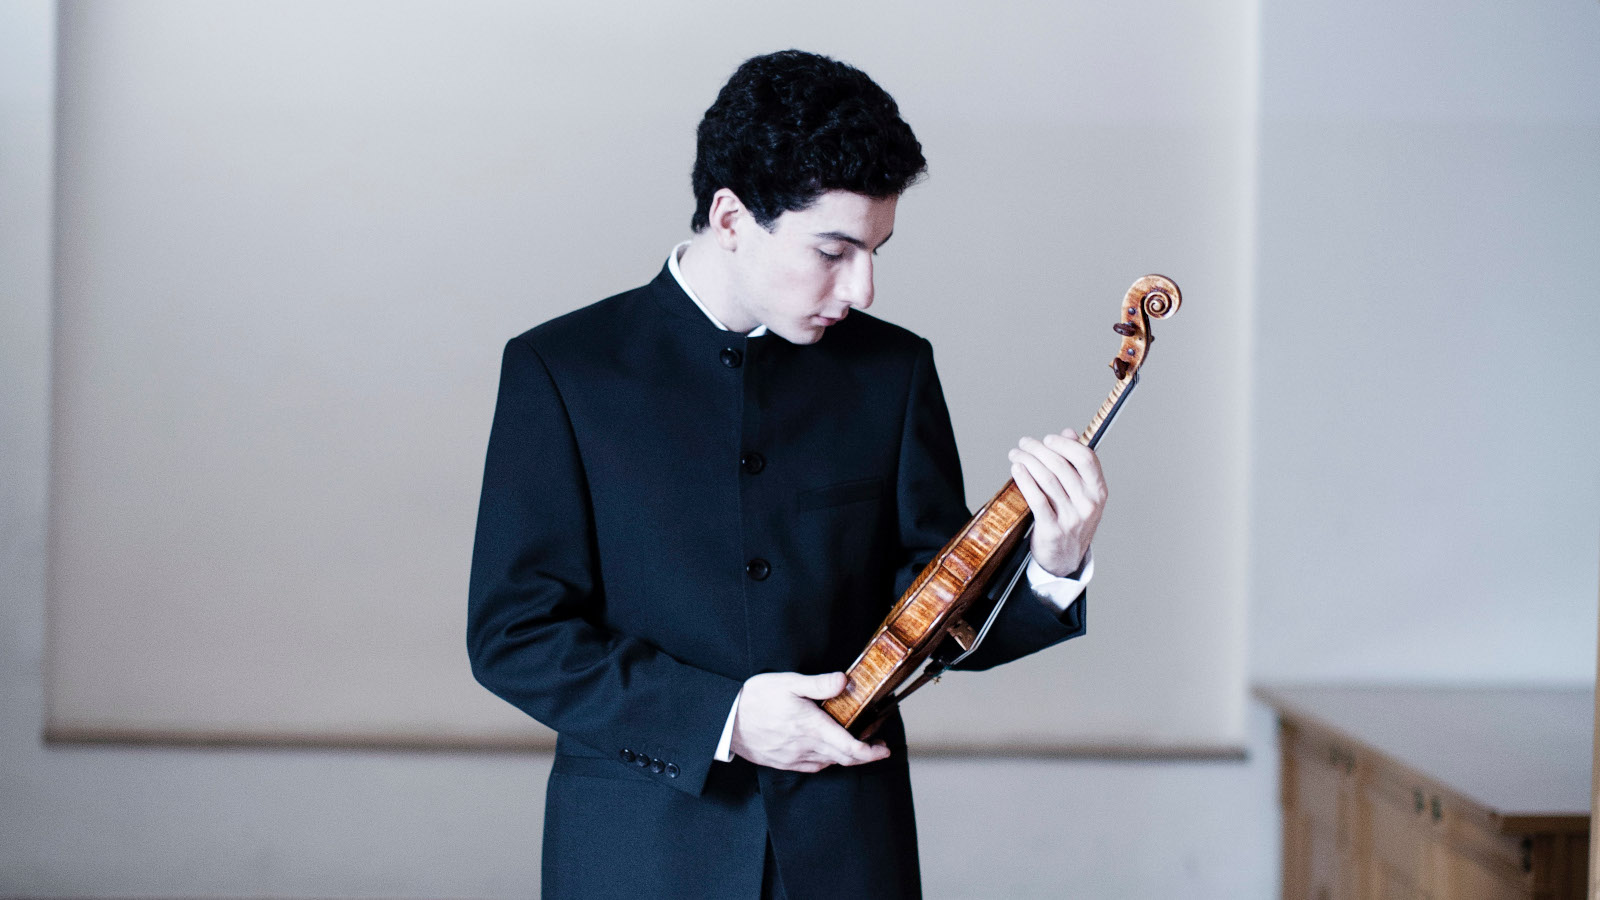 Kuvassa on viulisti Sergei Hatsarjan, joka katsoo viuluaan.  Kuva on musta-valkoinen.